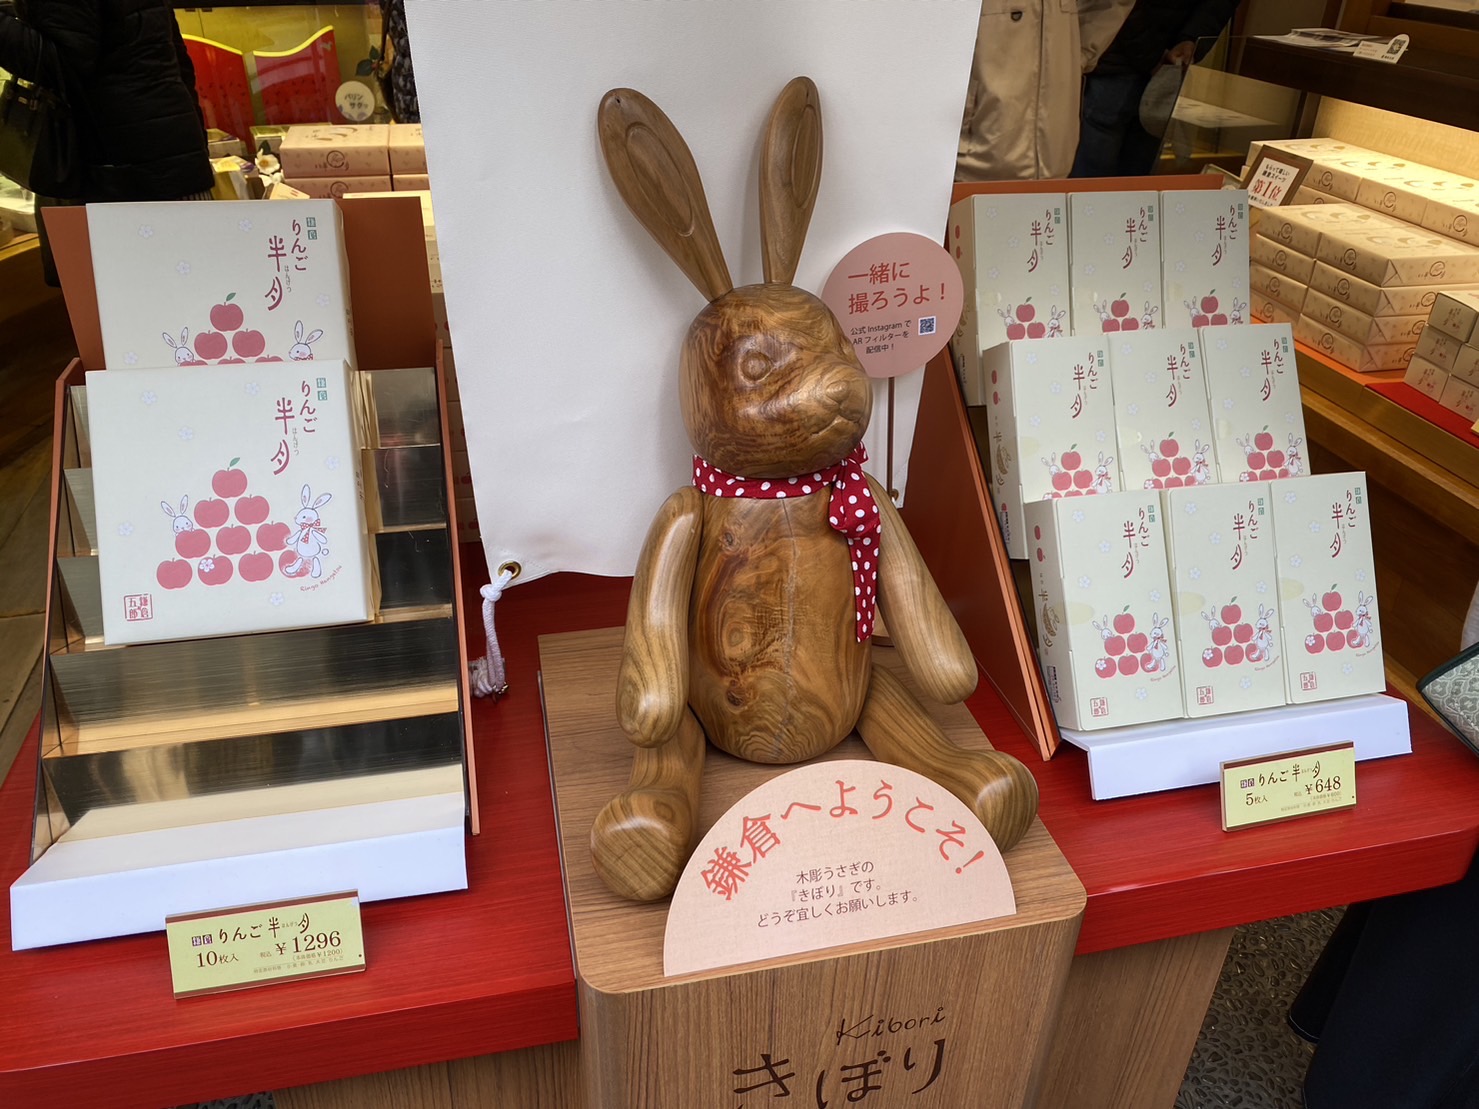 鎌倉市のシンボル木「ヤマザクラ」でつくるウサギの木彫り - eTREE